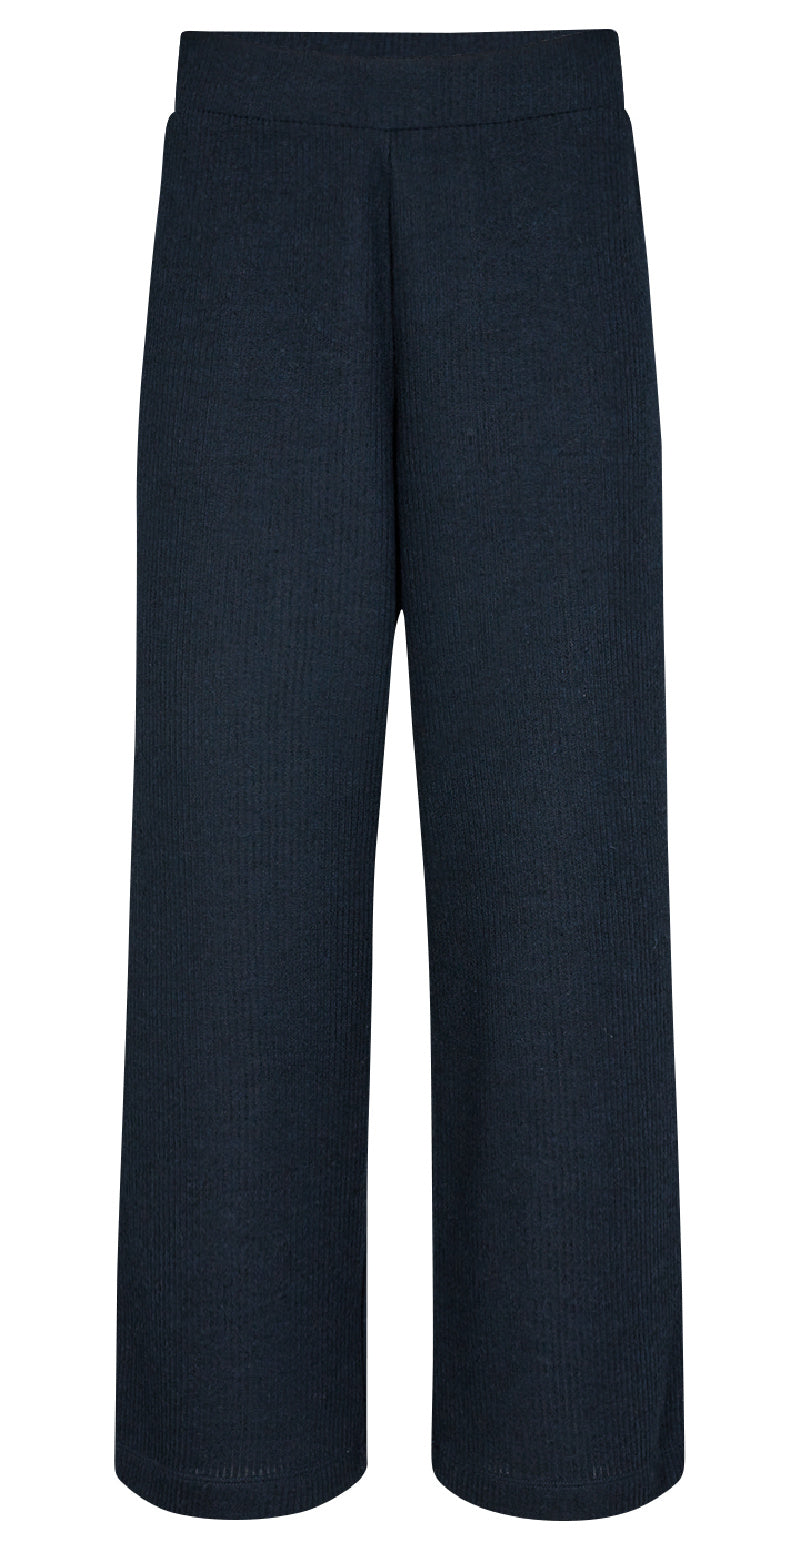 Ribbed bukser med elastikkant navy